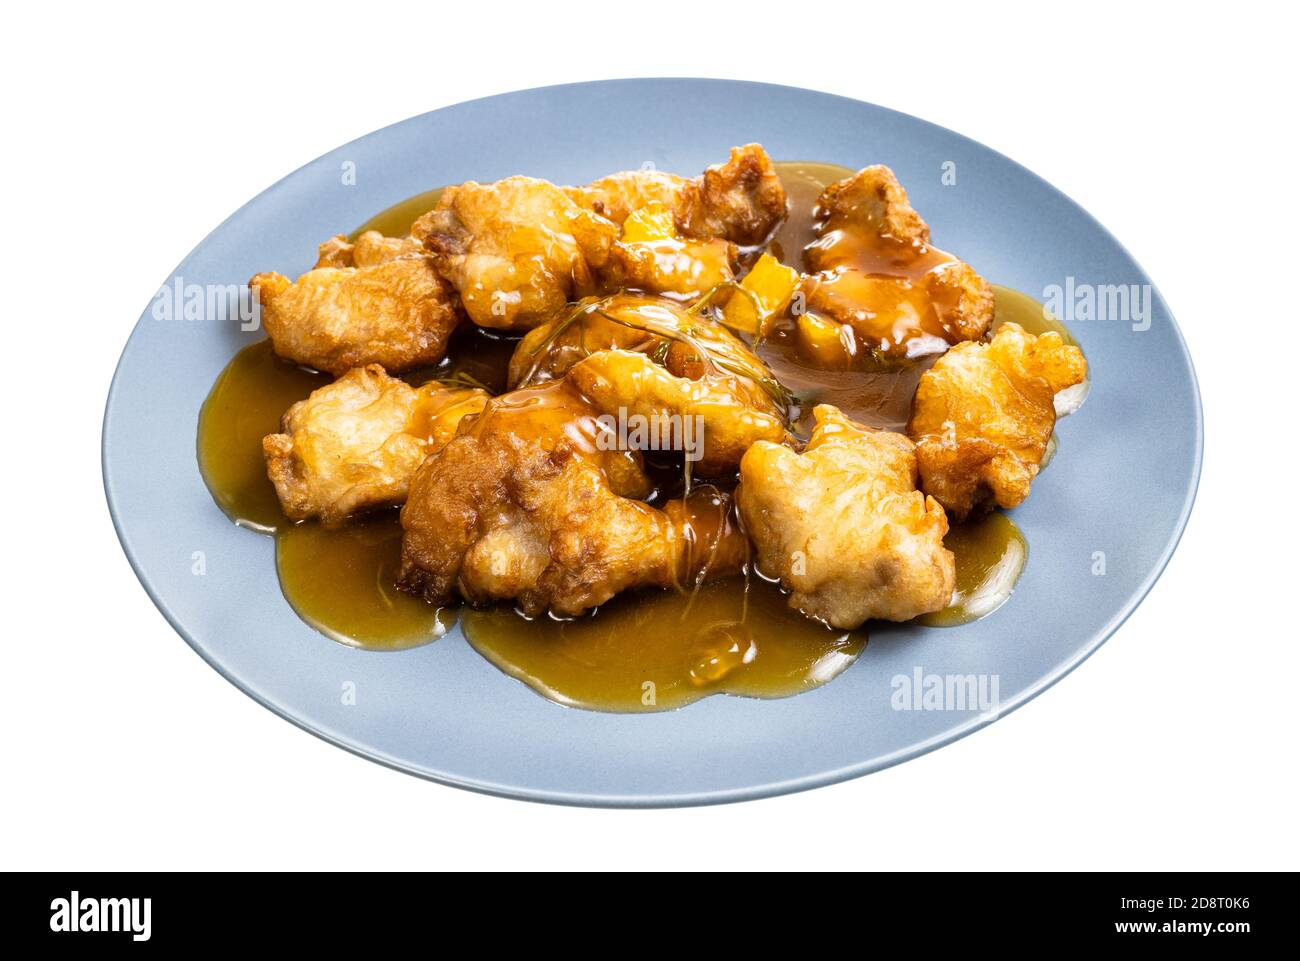 cuisine chinoise - porc à la sauce orange (filet de porc en tranches poêlé dans de la pâte à frire avec une sauce à l'orange et garni de coriandre) sur plaque bleue isolée o Banque D'Images